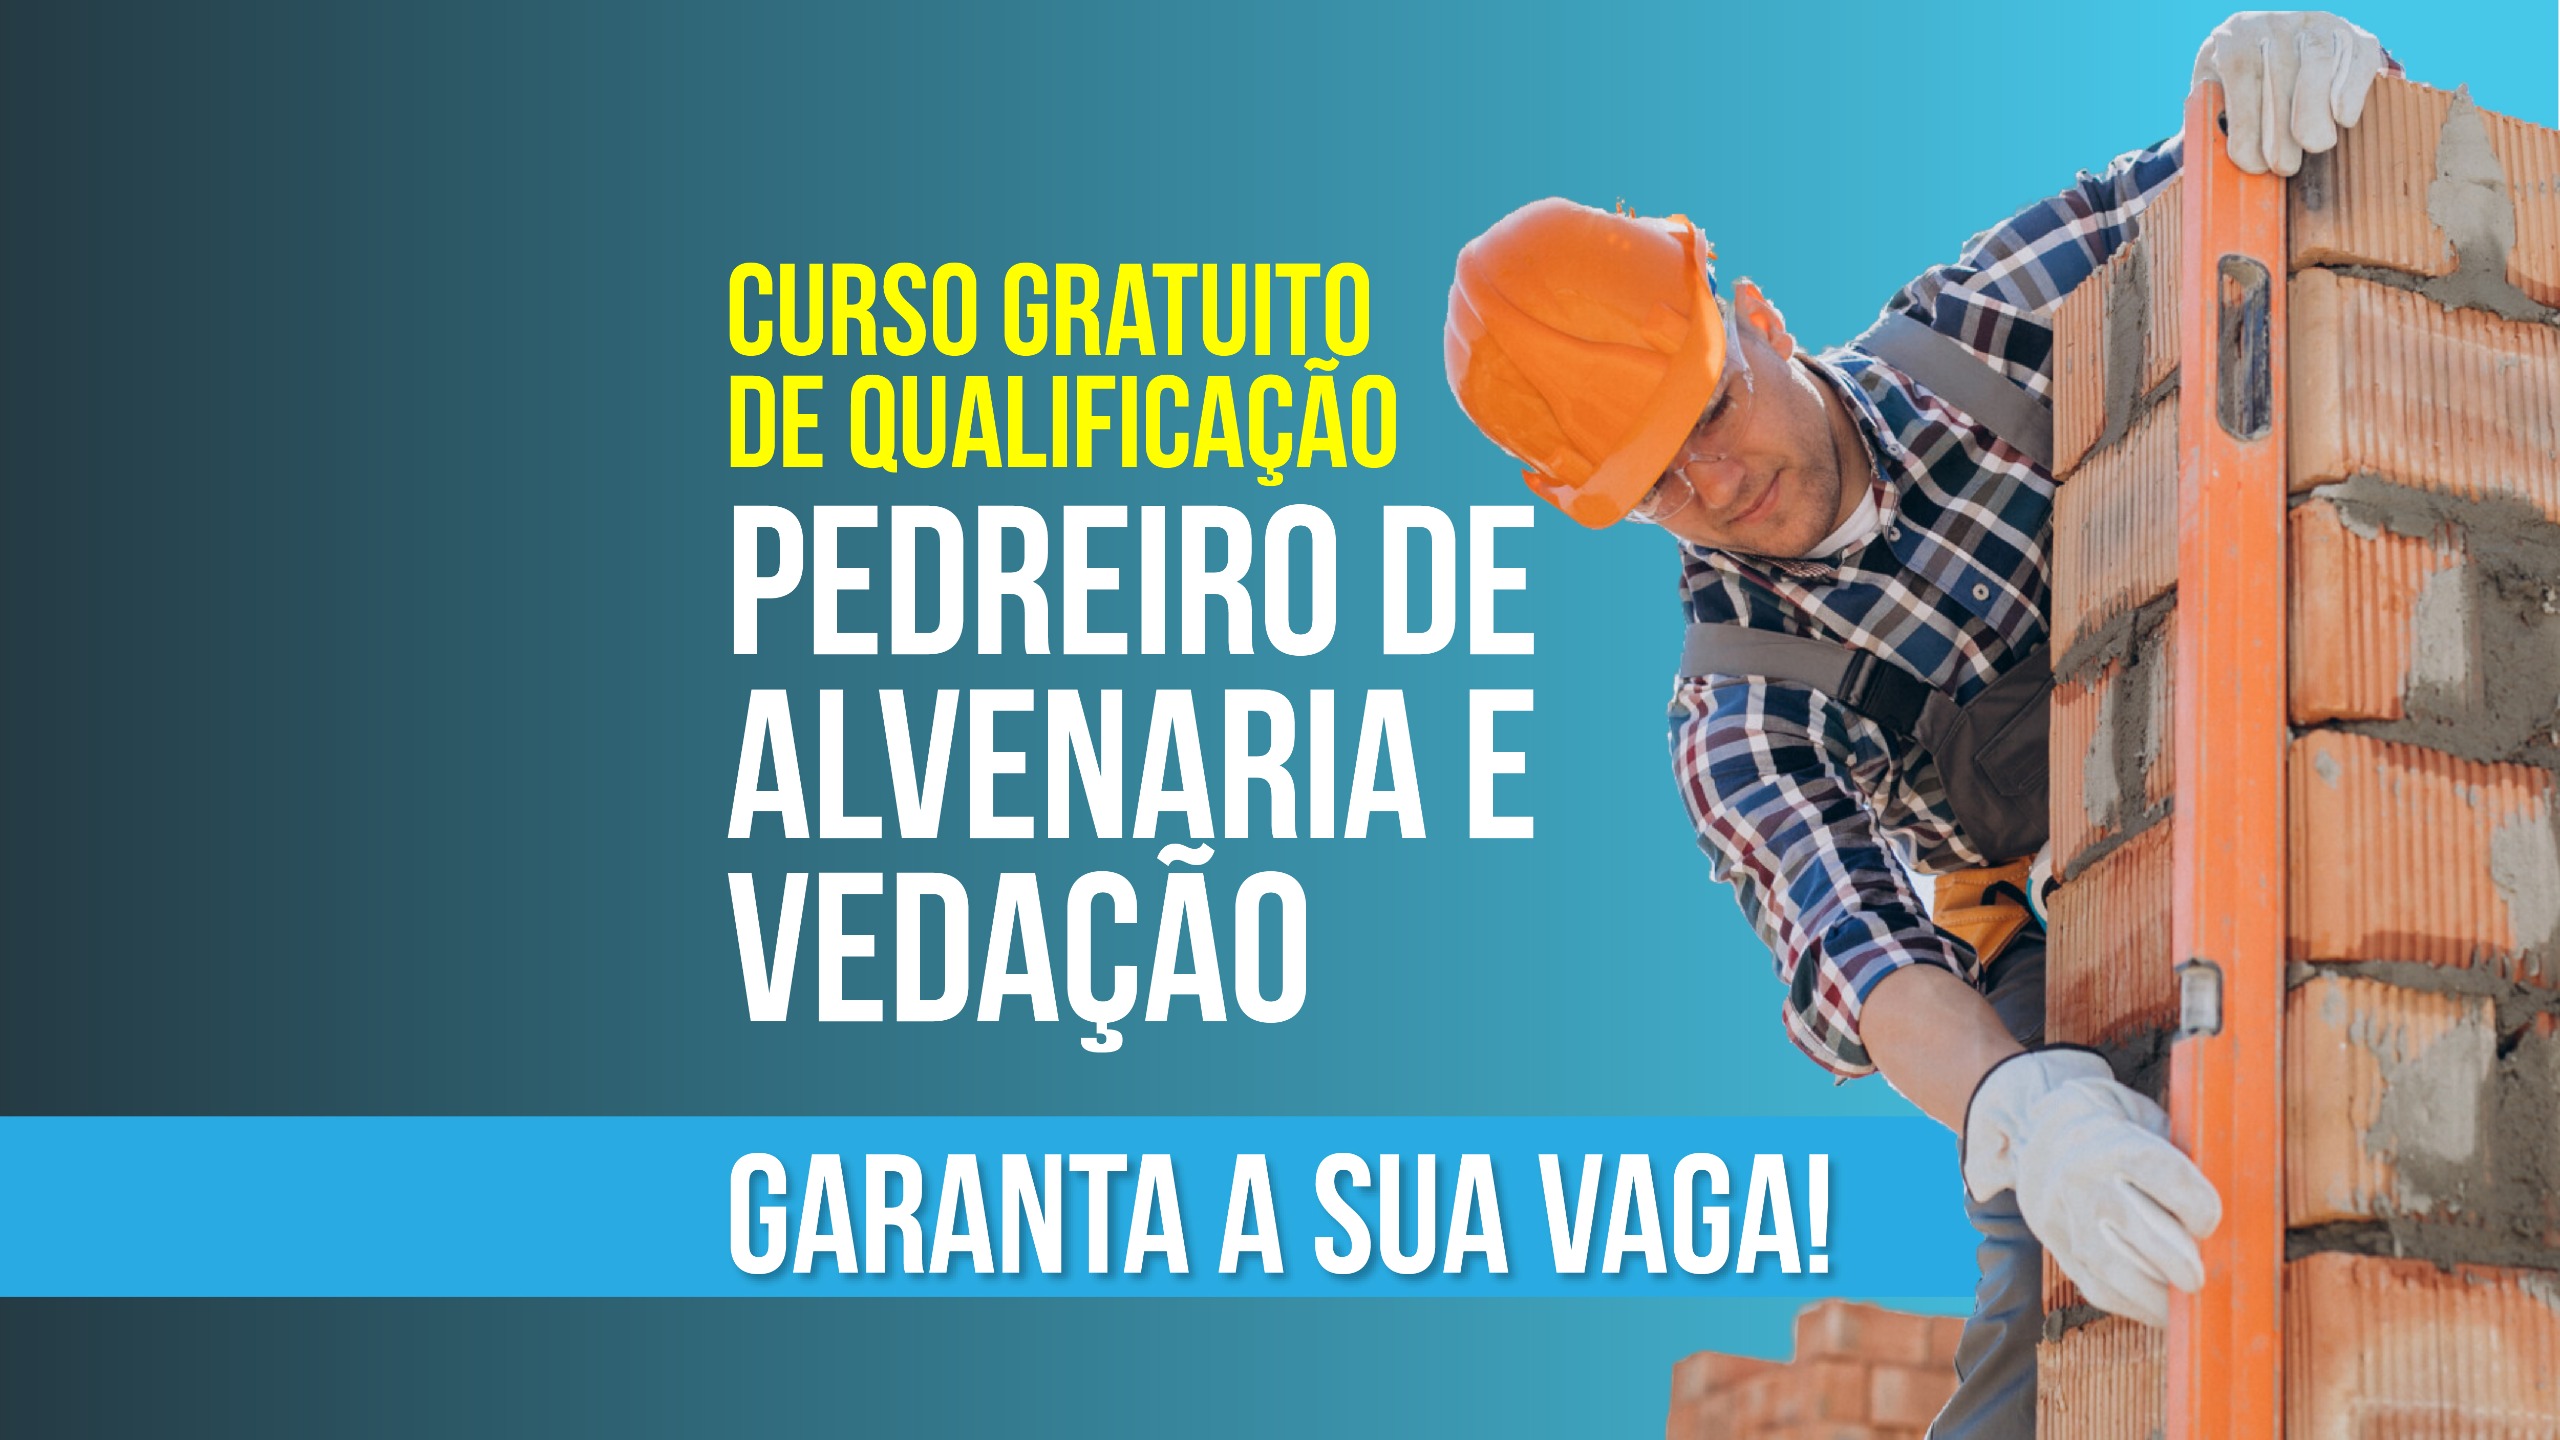 São Pedro da Aldeia: Inscrições abertas para curso gratuito de pedreiro de alvenaria e vedação